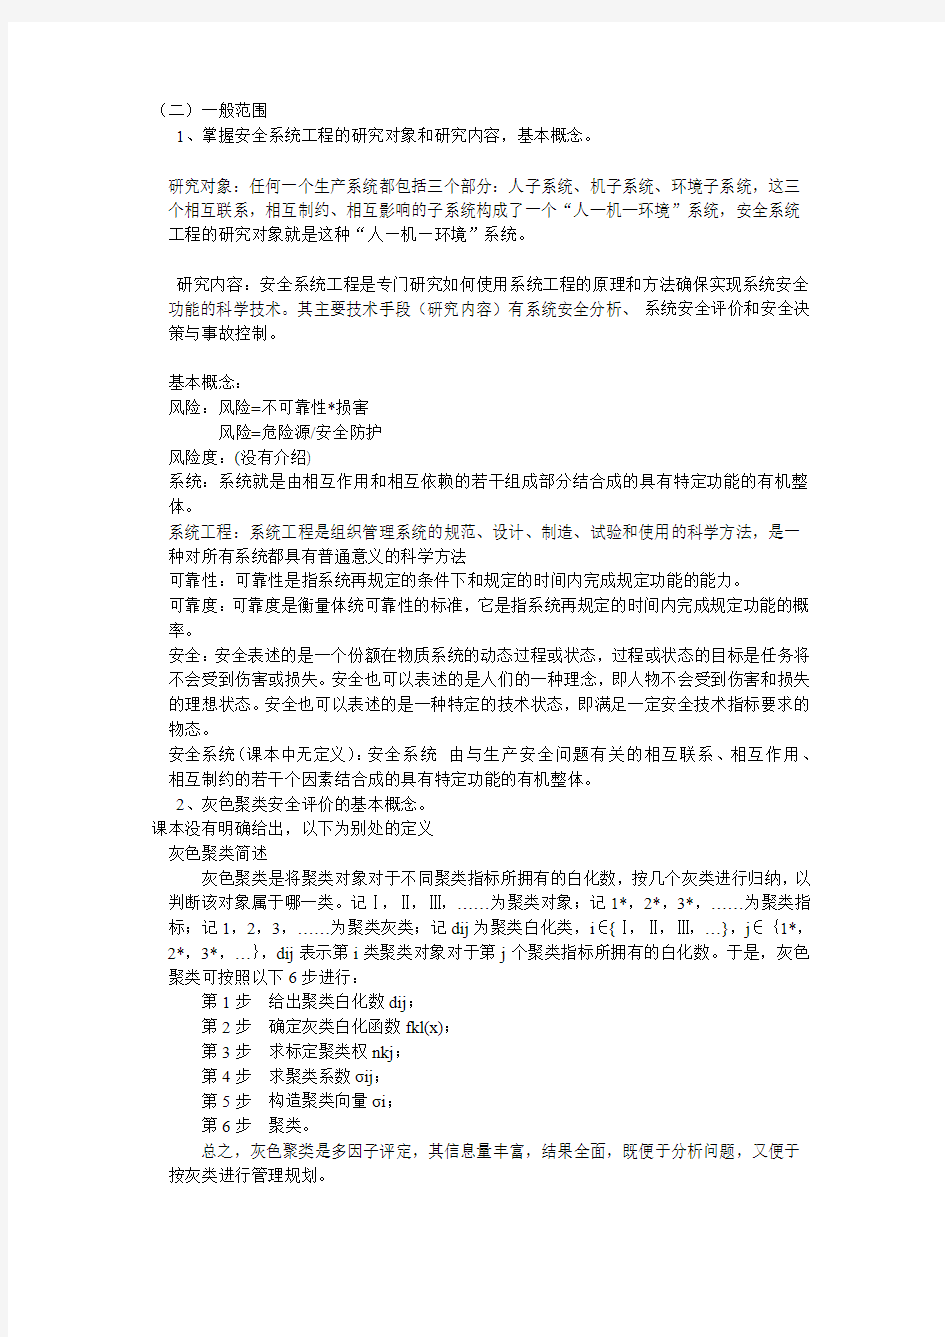 中国矿业大学(北京)2010年硕士研究生考试安全系统工程考试范围